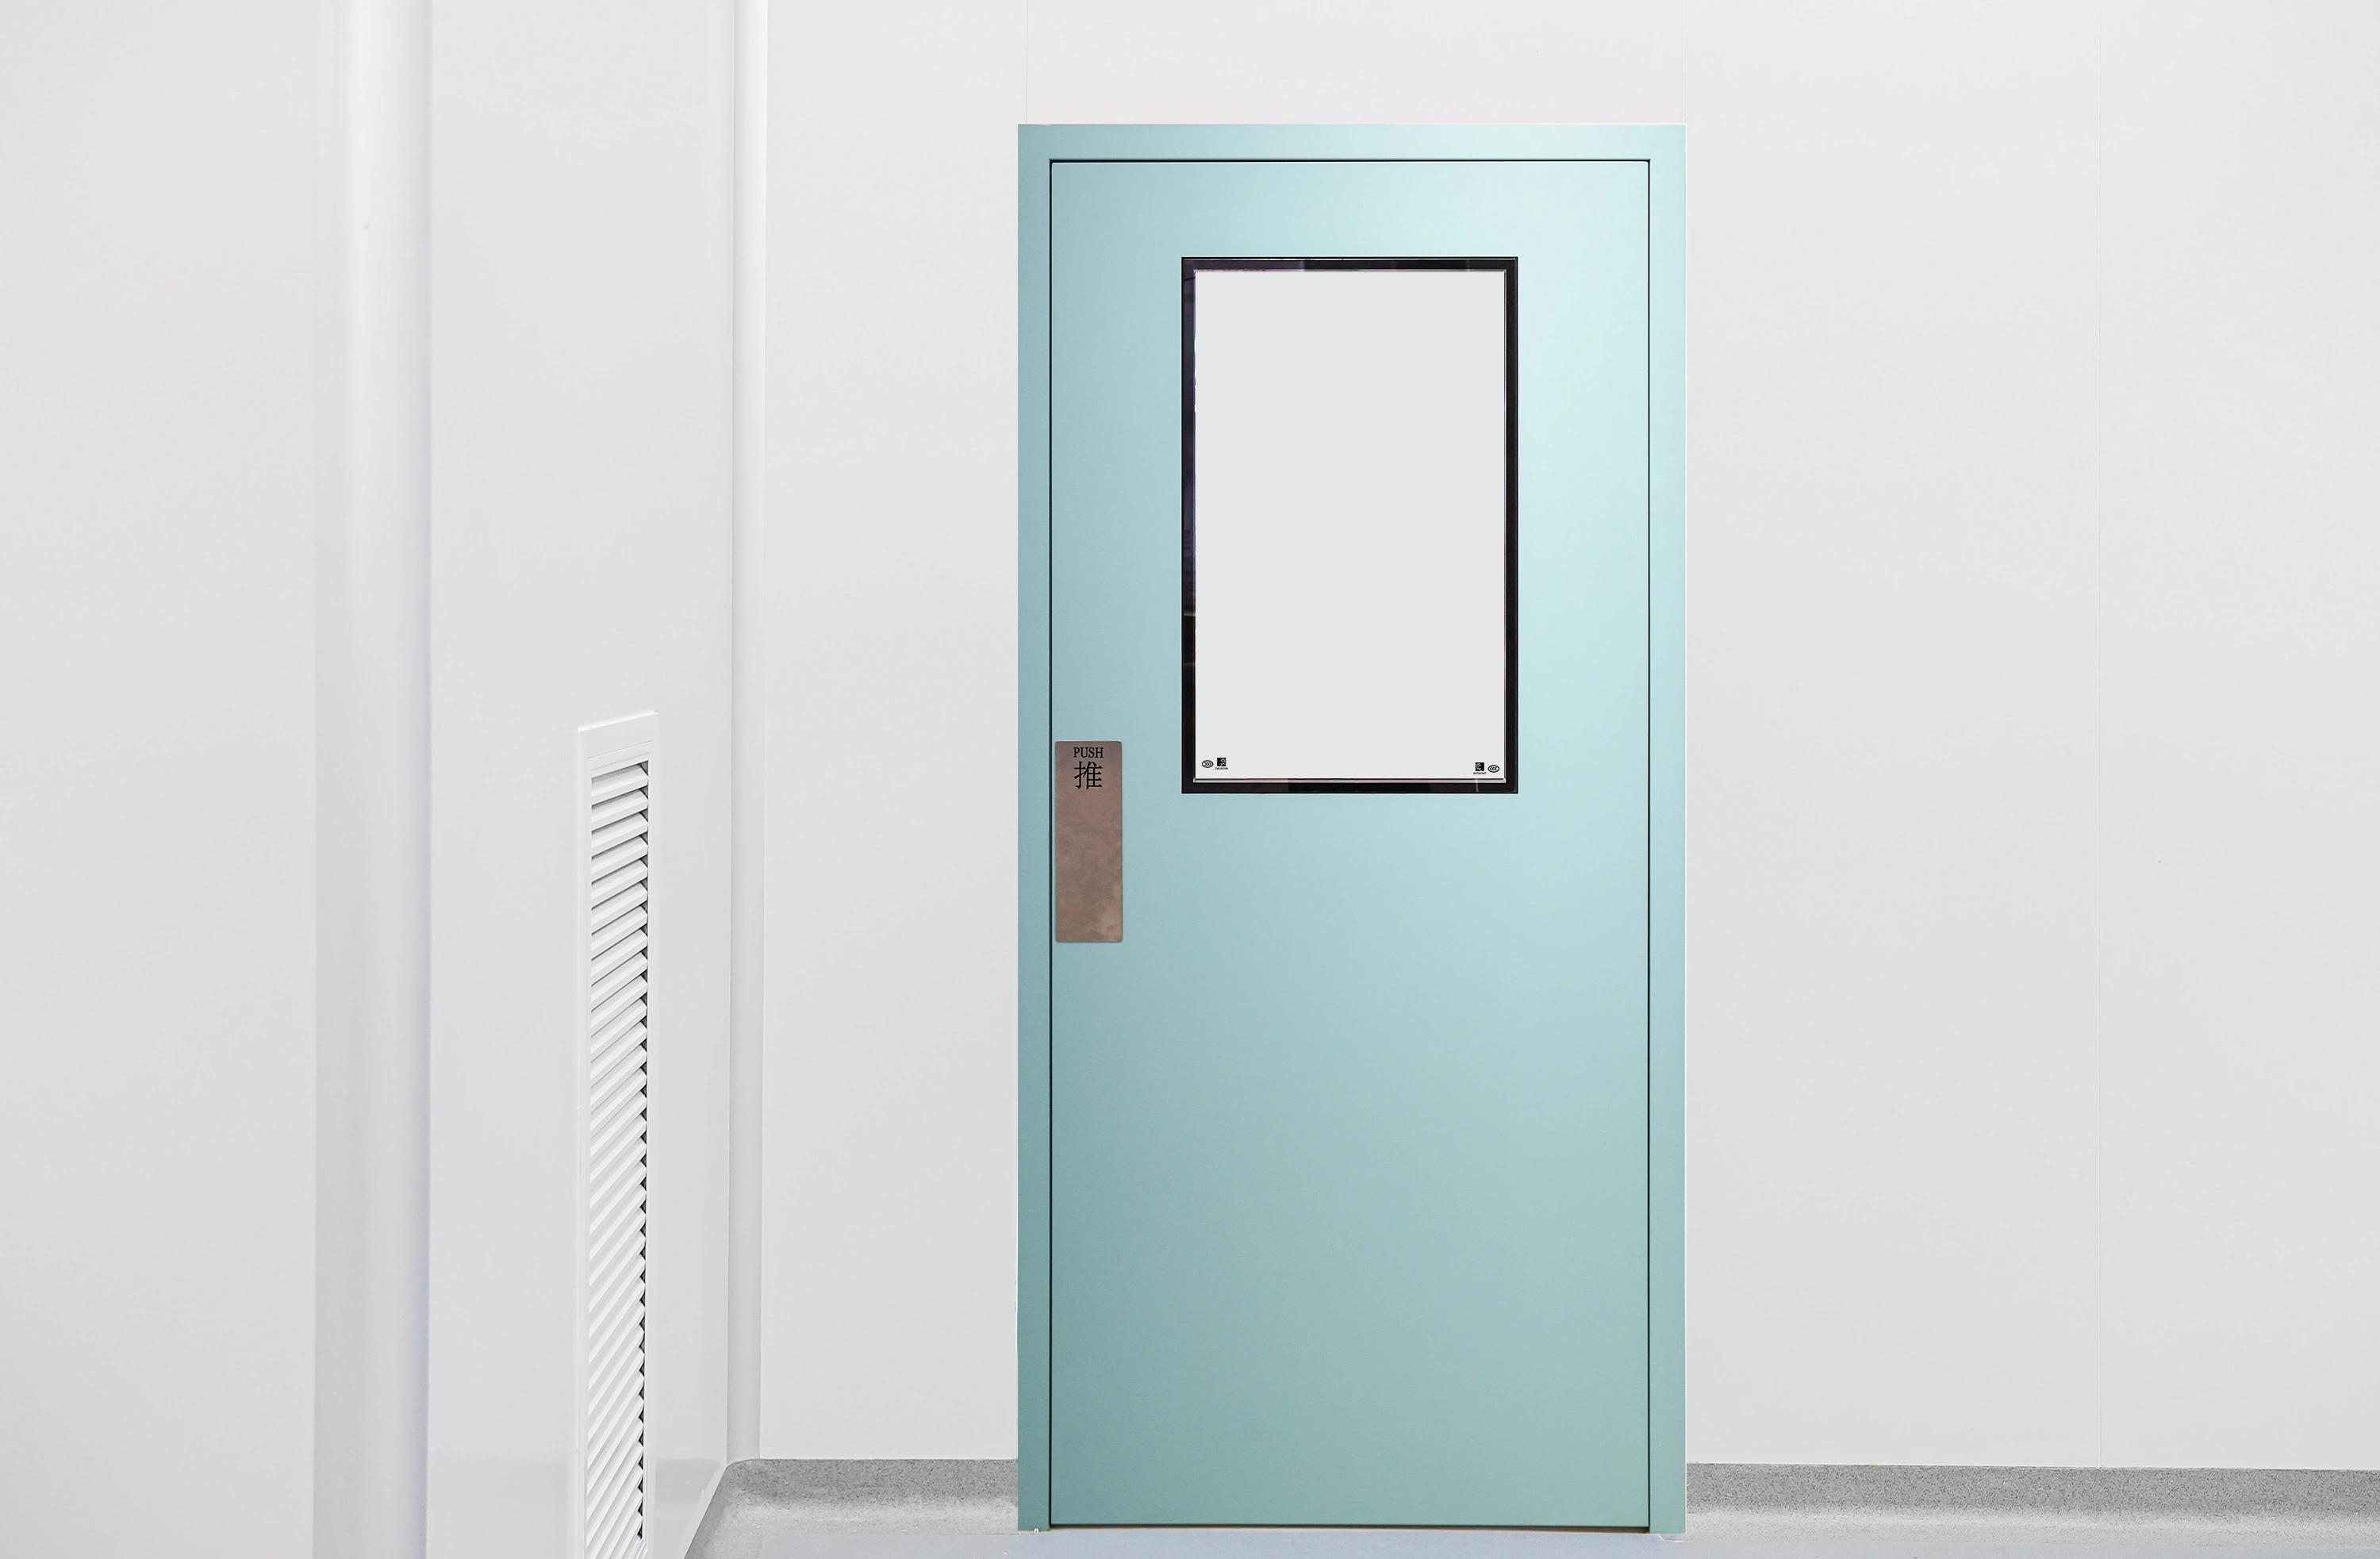 クリーンルームのためのg -サイレンス磁気自動ドア